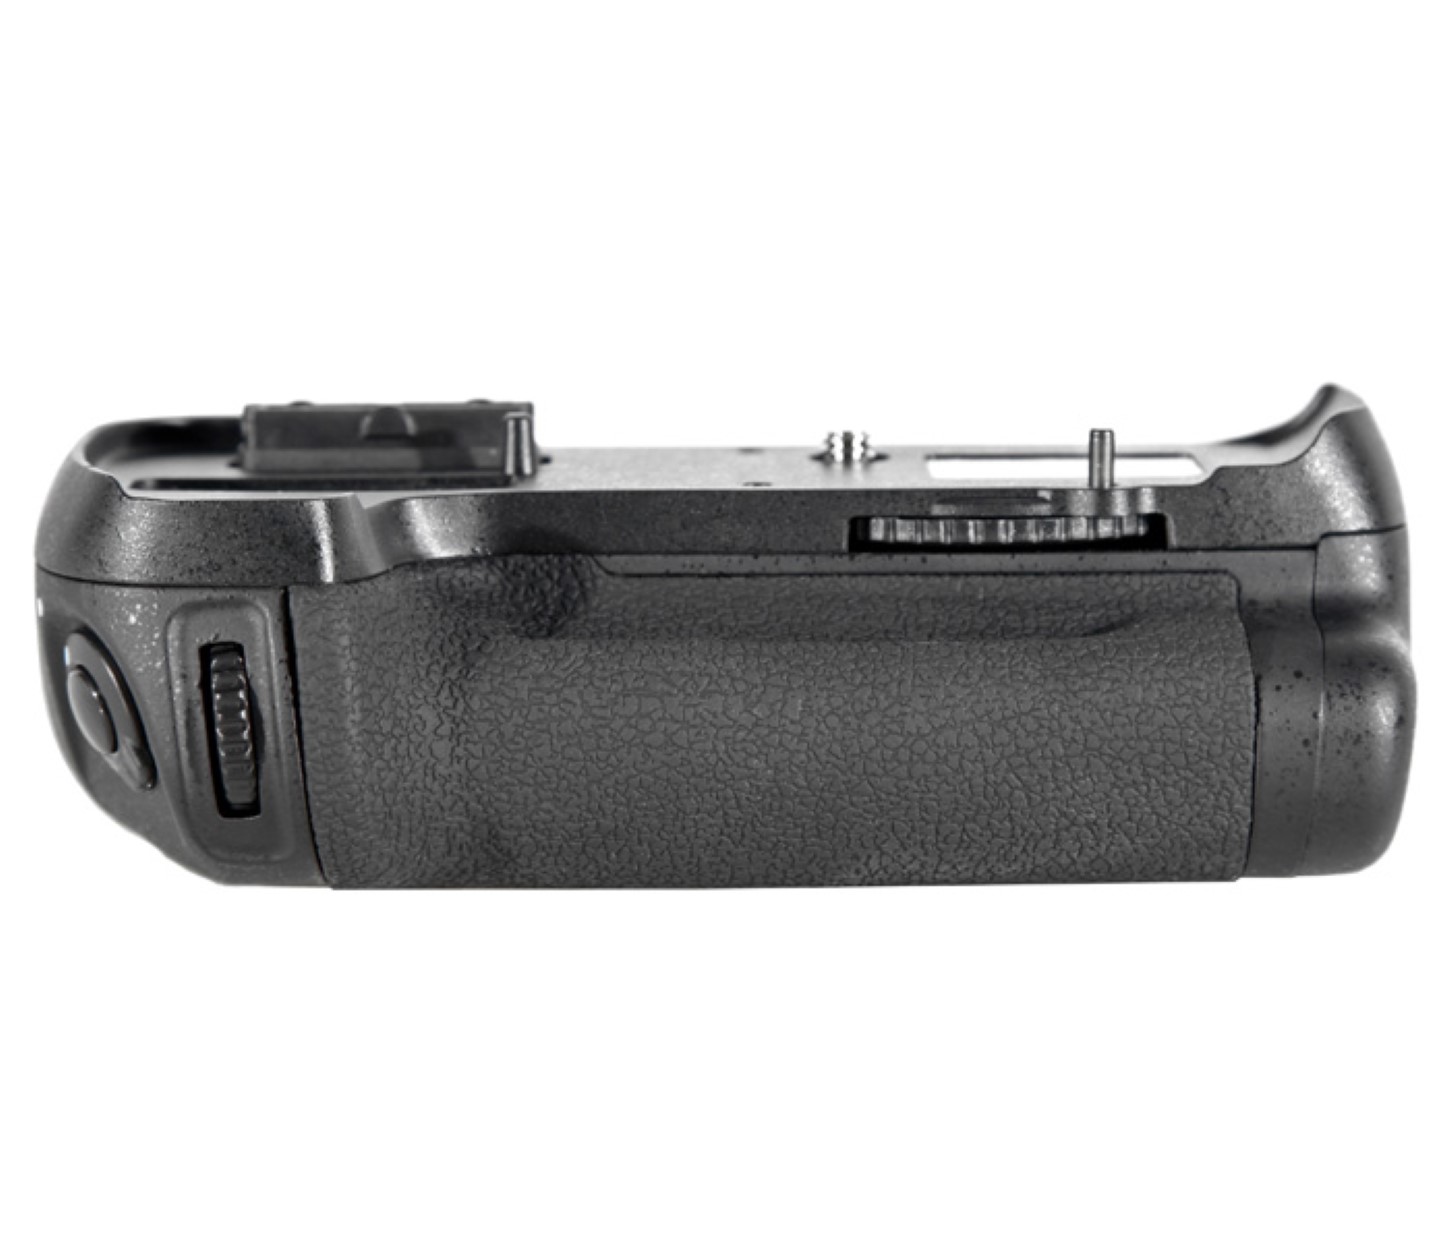 ayex Batteriegriff Set für Nikon D600 D610 wie MB-D14 + 2x EN-EL15B Akku + 1x USB Dual Ladegerät